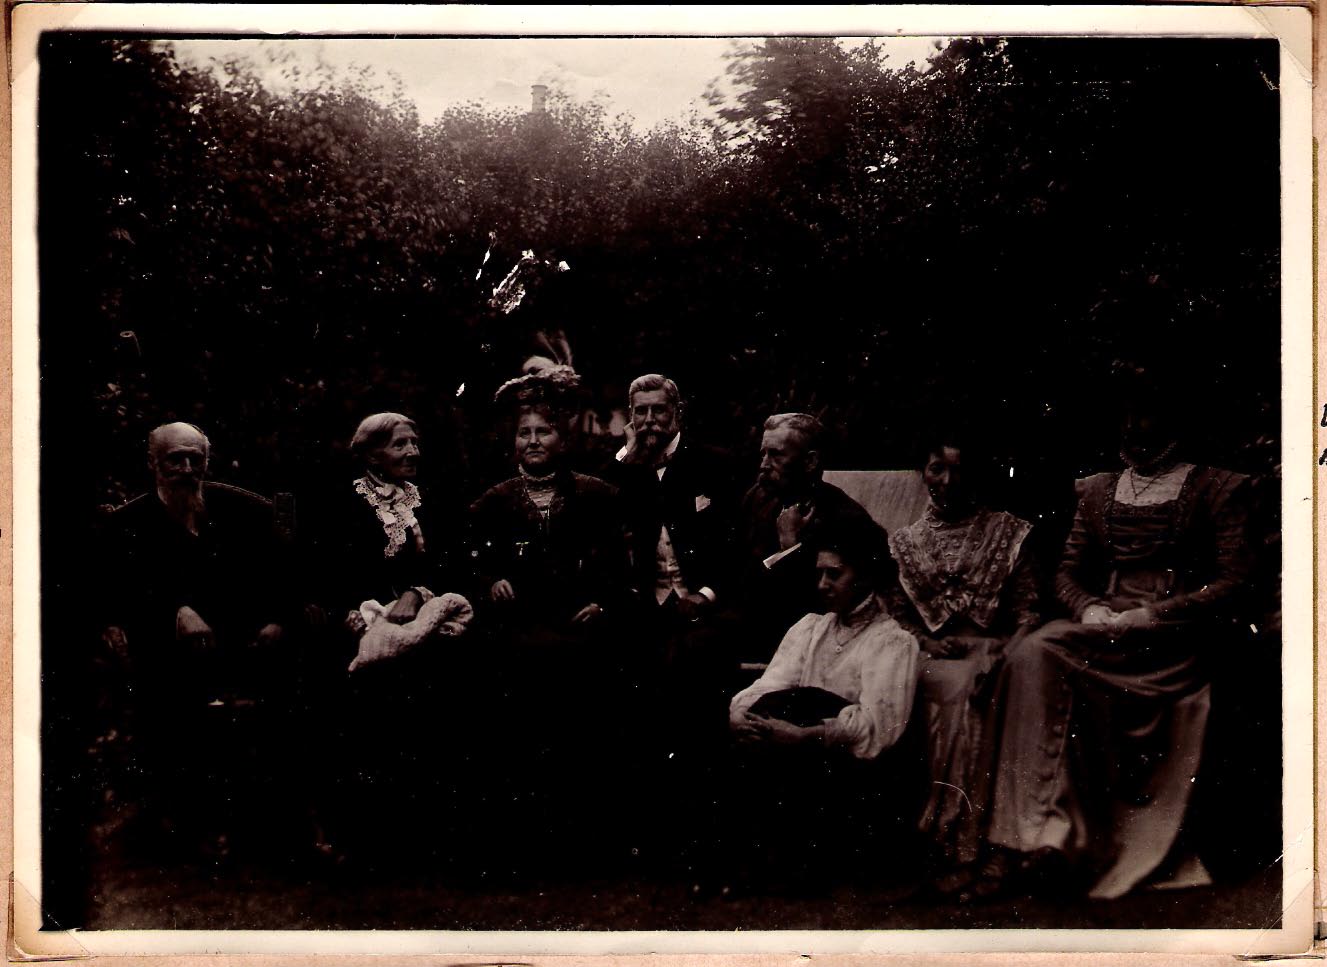 Thomas BEARMAN, 1st left, Keturah 3rd from left and Elsie far right